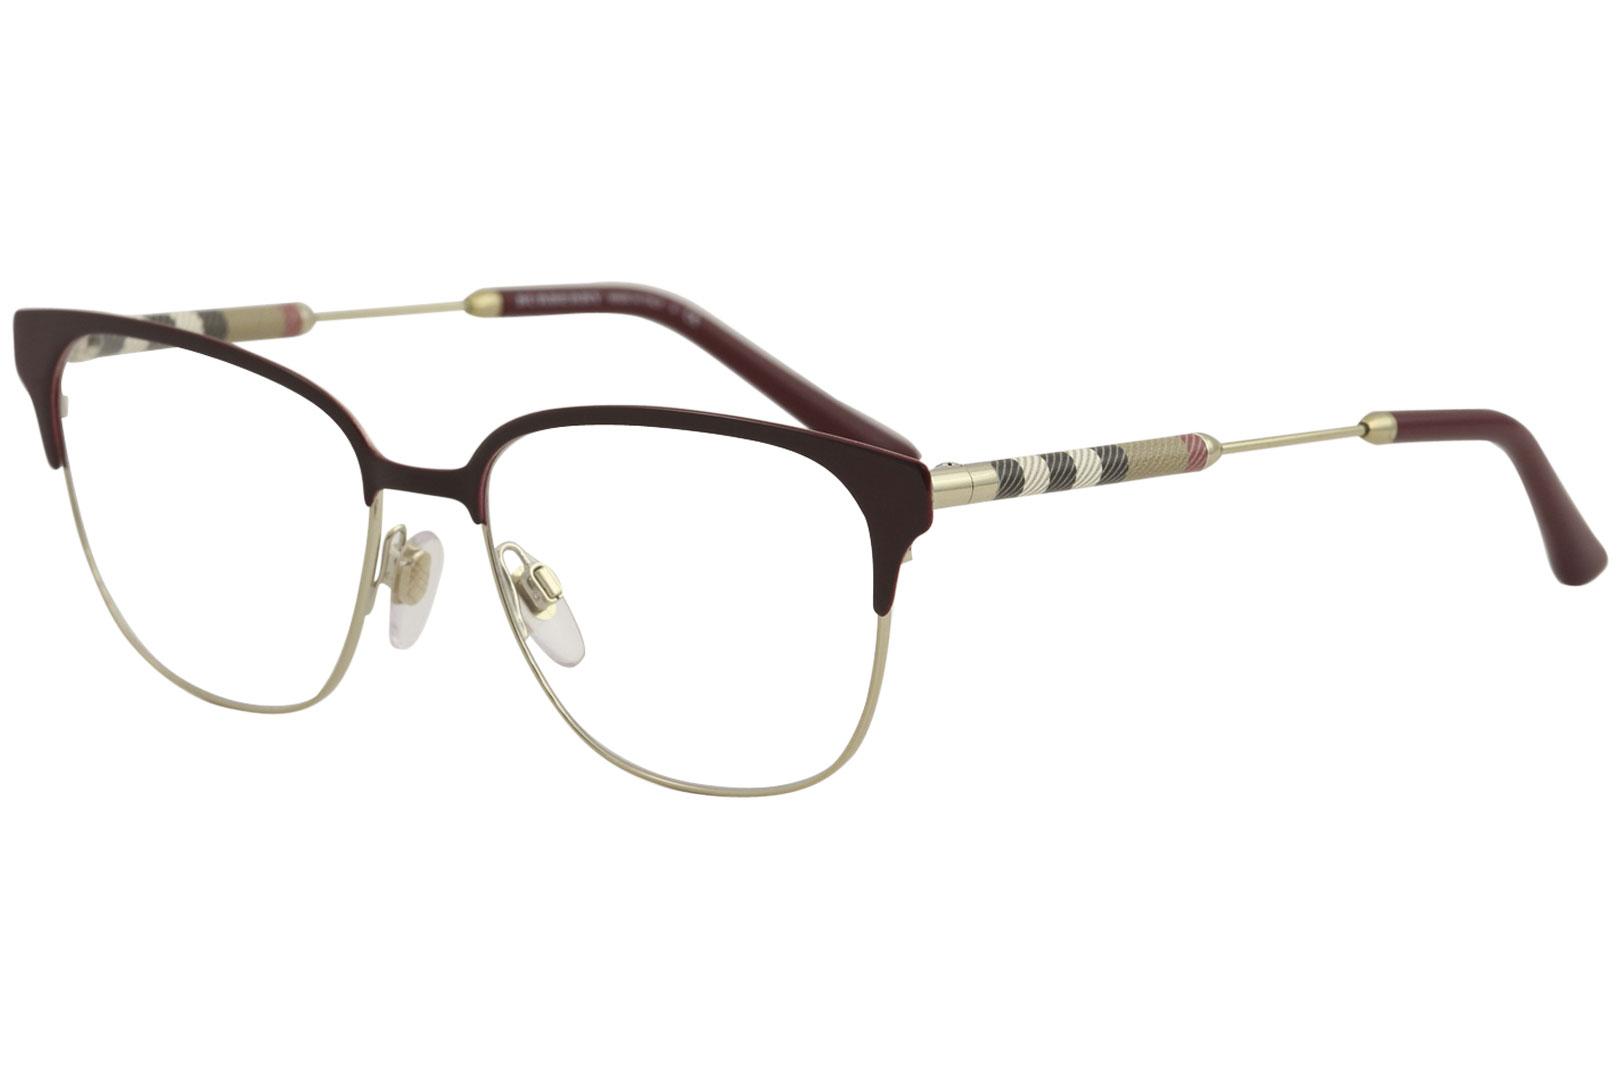 Burberry Women's Eyeglasses BE1313Q BE/1313/Q Full Rim Optical Frame - Bordeaux/Light Gold   1238 - Lens 53 Bridge 16 Temple 140mm